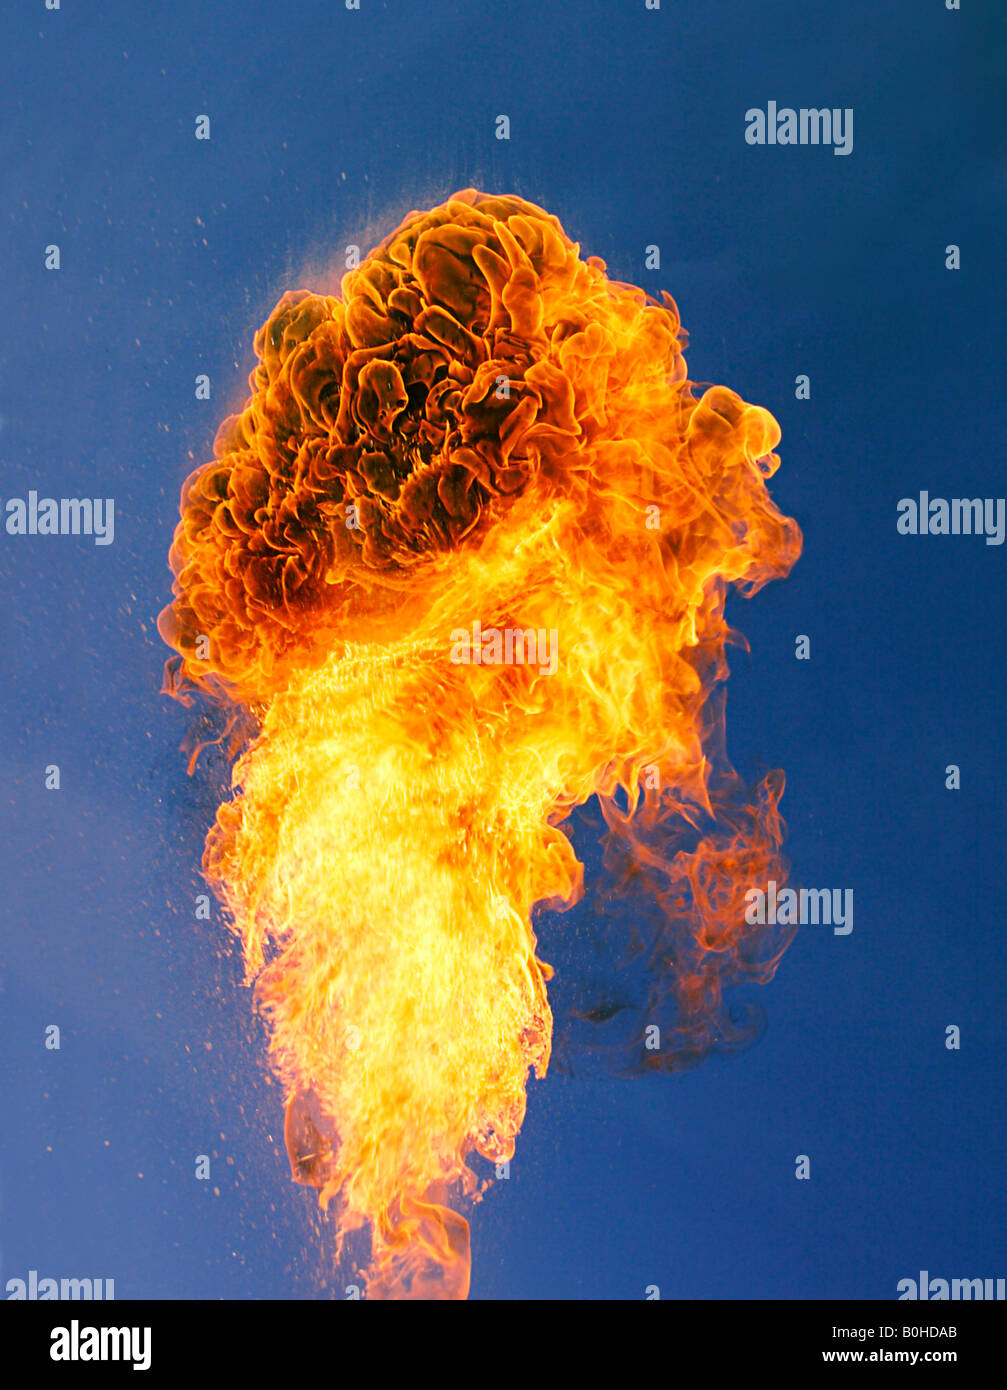 Gran llama, la columna de fuego elevándose de una explosión Foto de stock